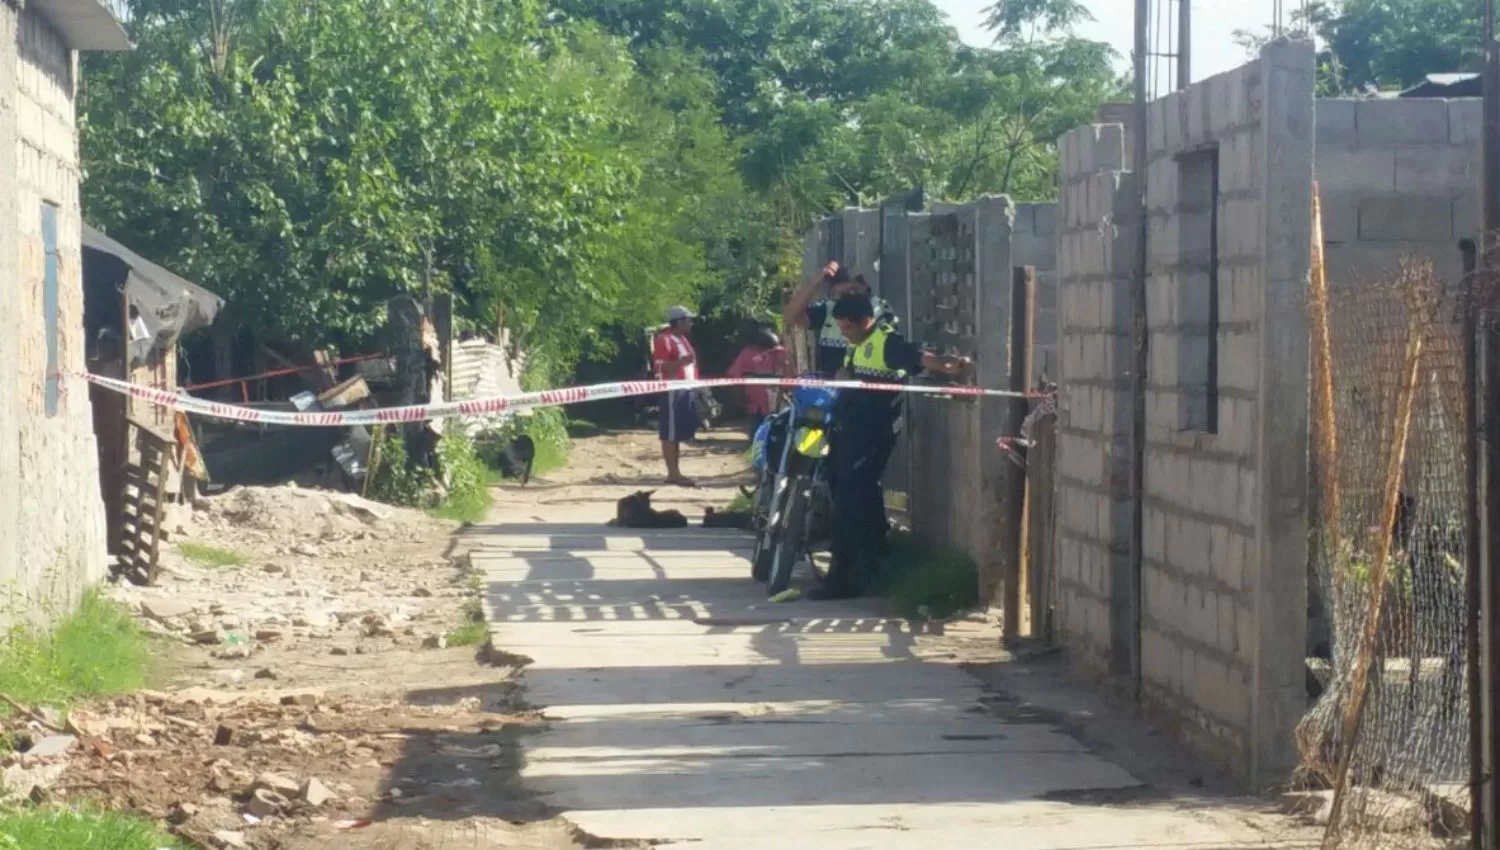 EN EL LUGAR. La Policía investiga el macabro crimen en San Cayetano. LA GACETA / INÉS QUINTEROS ORIO